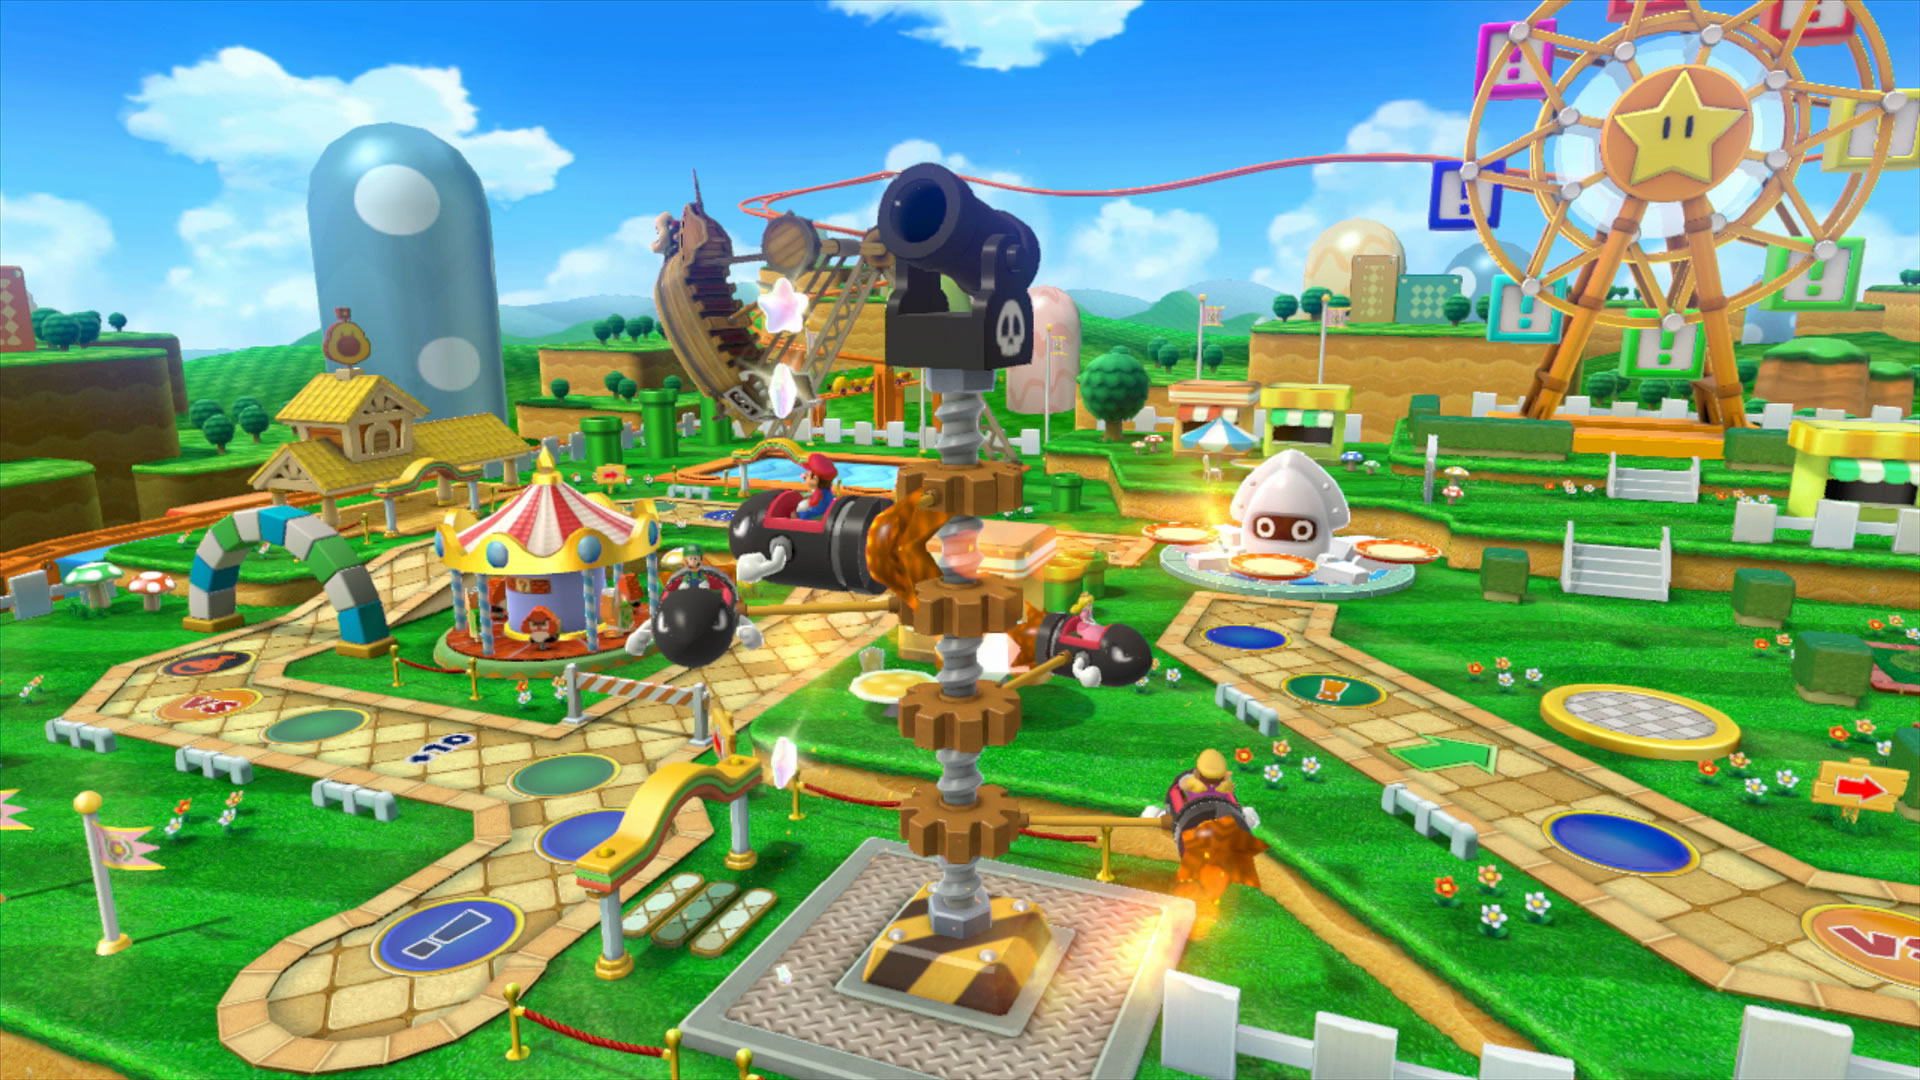 Península sirena Shuraba Mario Party 10, mira a los personajes en acción